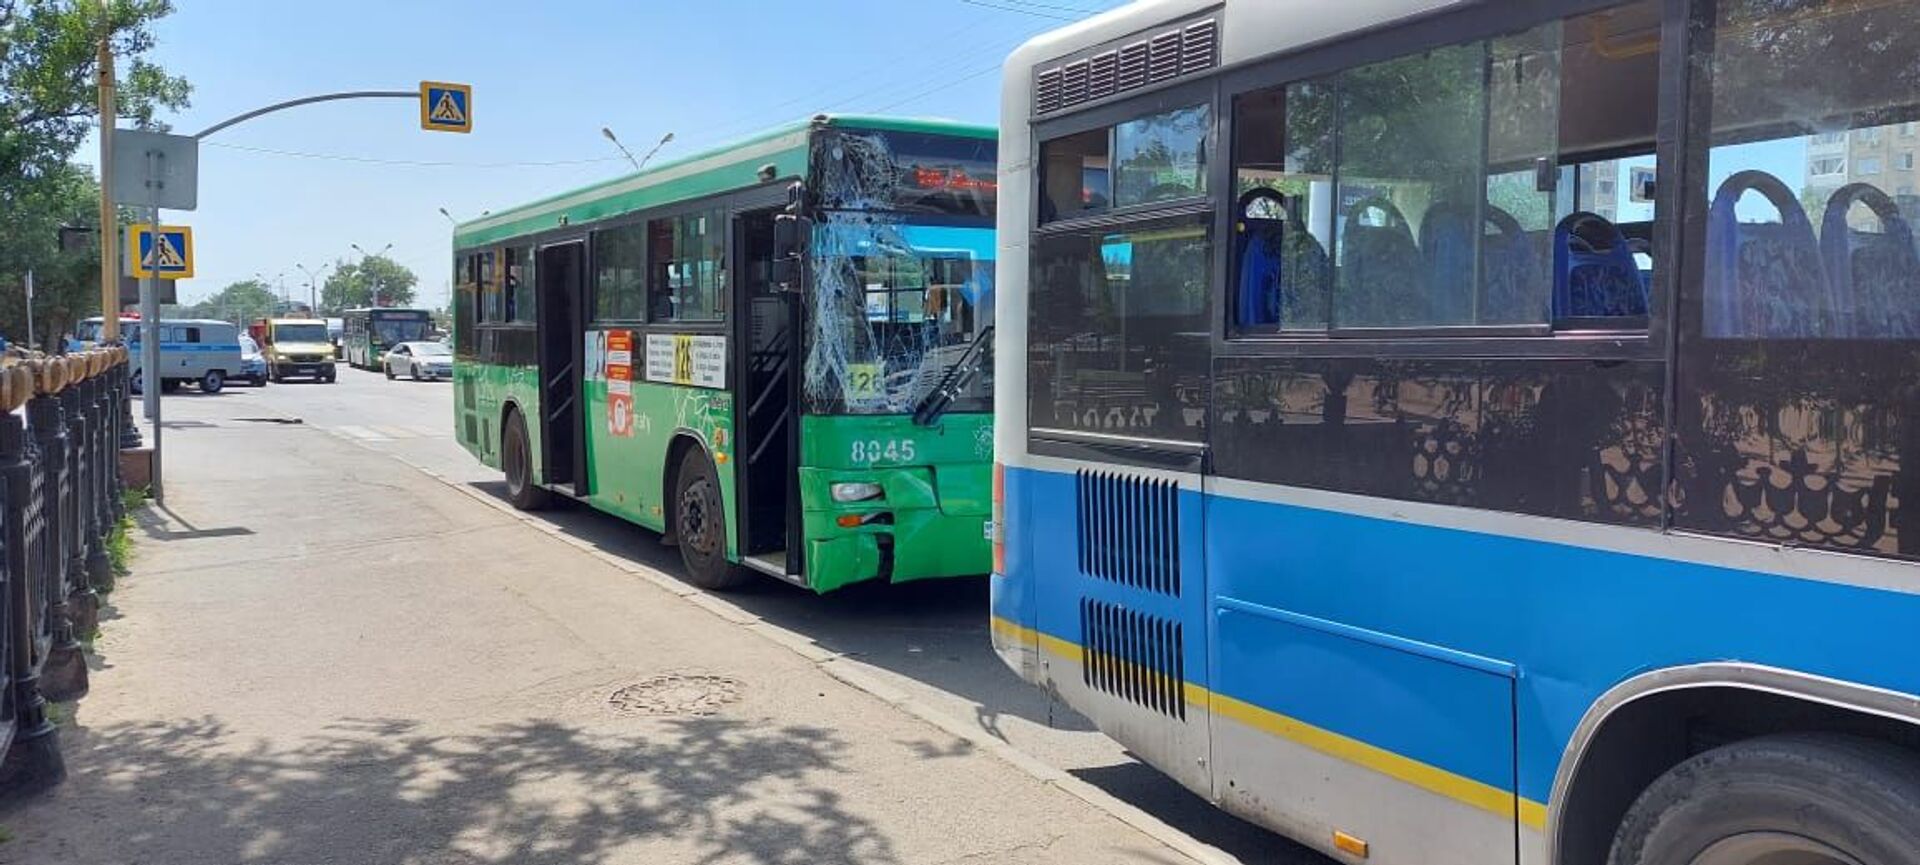 Два пассажирских автобуса столкнулись в Алматы, пострадала беременная пассажирка - Sputnik Казахстан, 1920, 15.06.2021